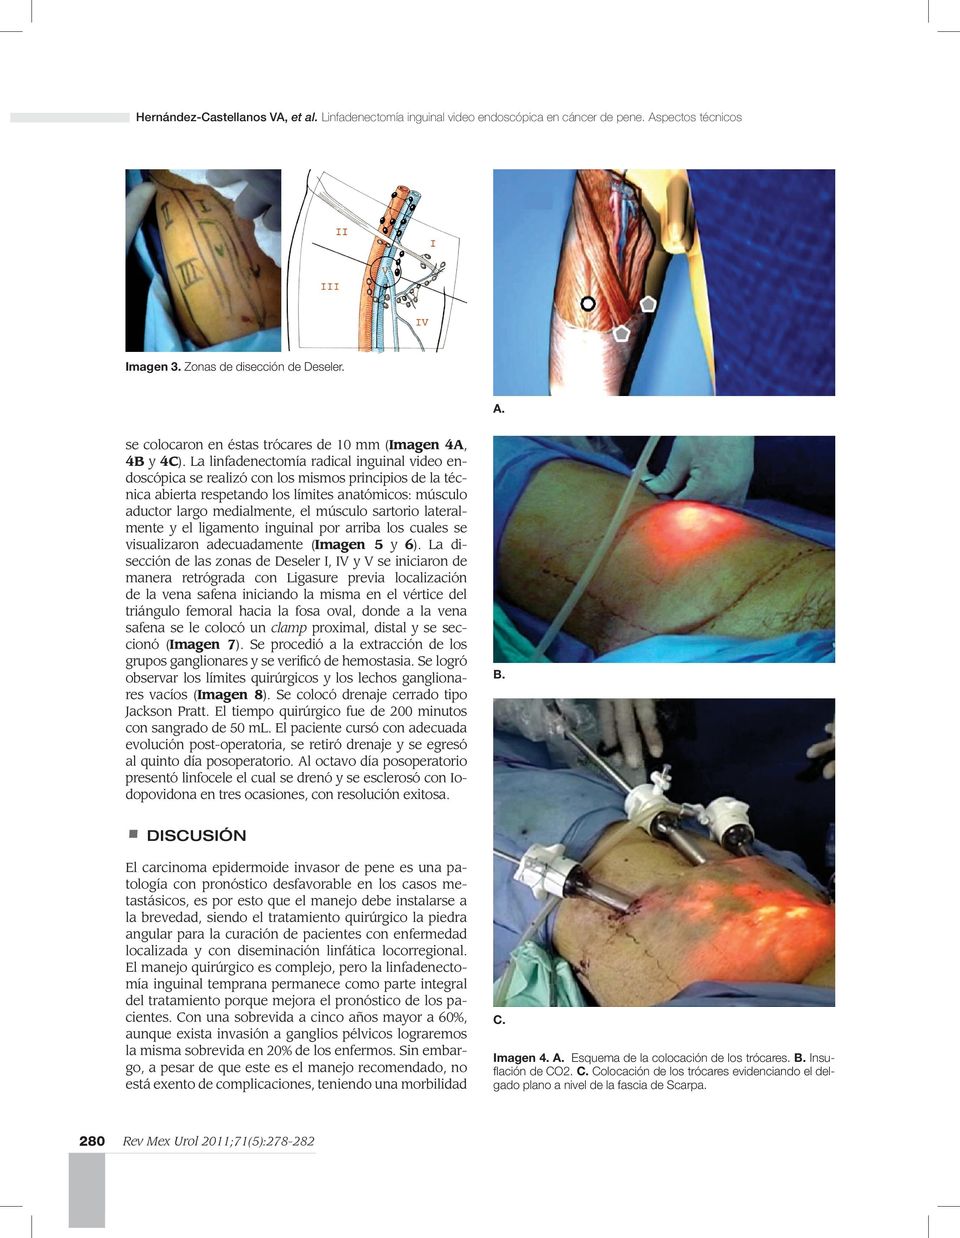 sartorio lateralmente y el ligamento inguinal por arriba los cuales se visualizaron adecuadamente (Imagen 5 y 6).